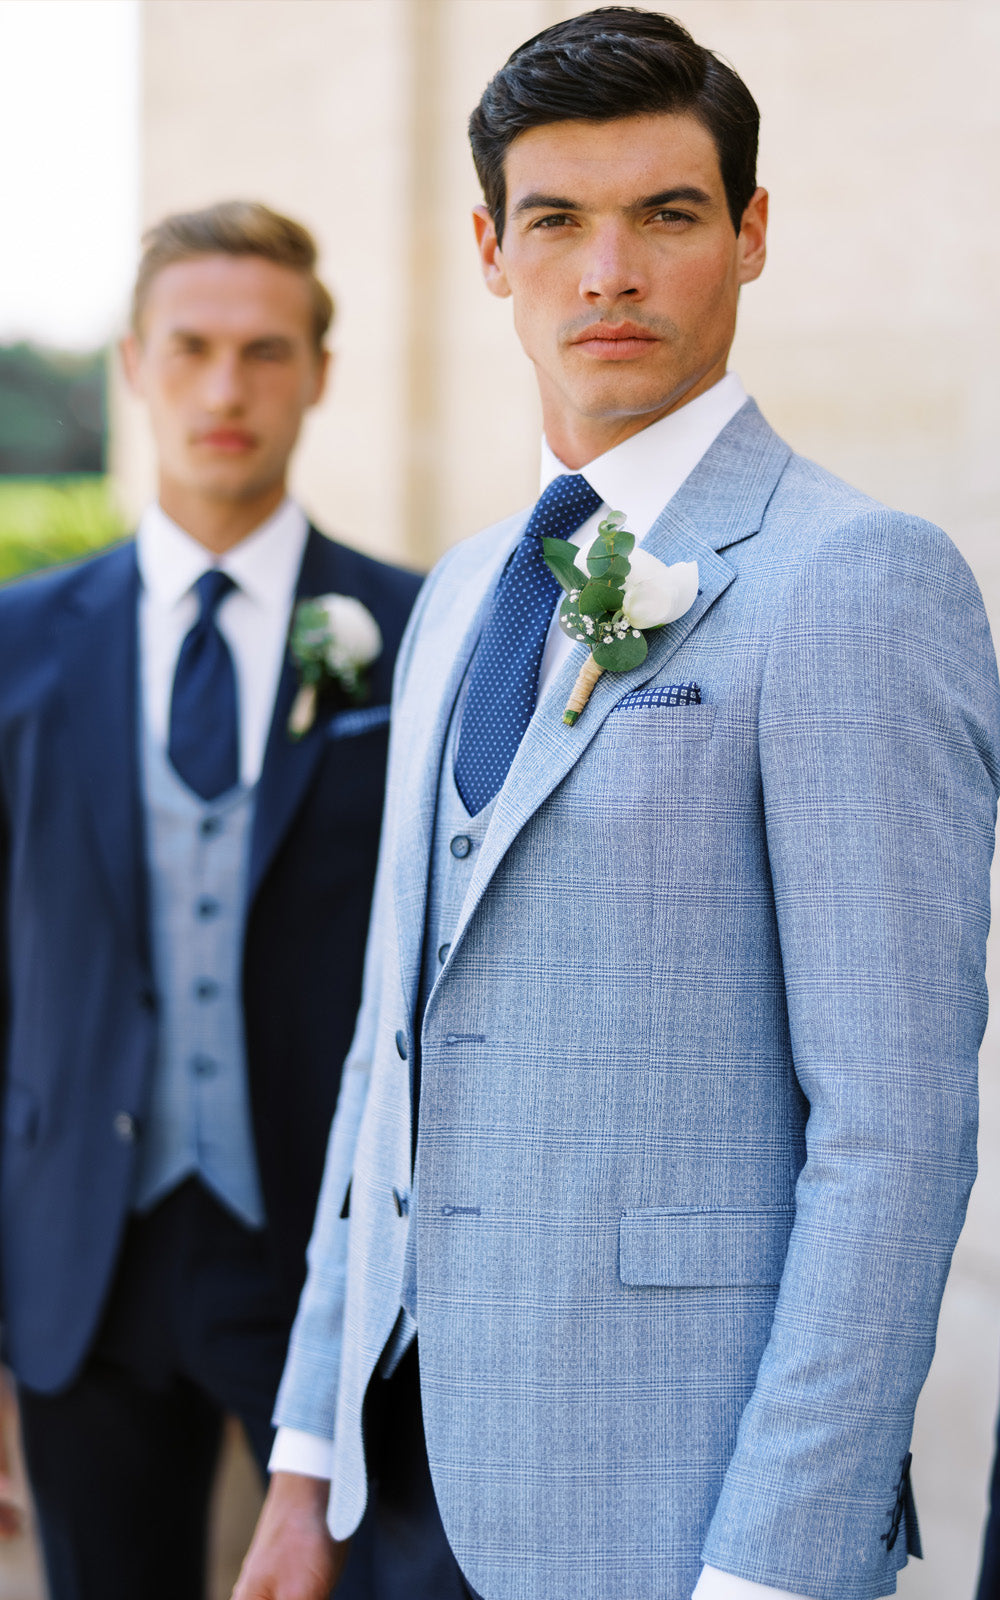 Men's Wedding Suits, Buy or Hire Grooms Wedding Suits